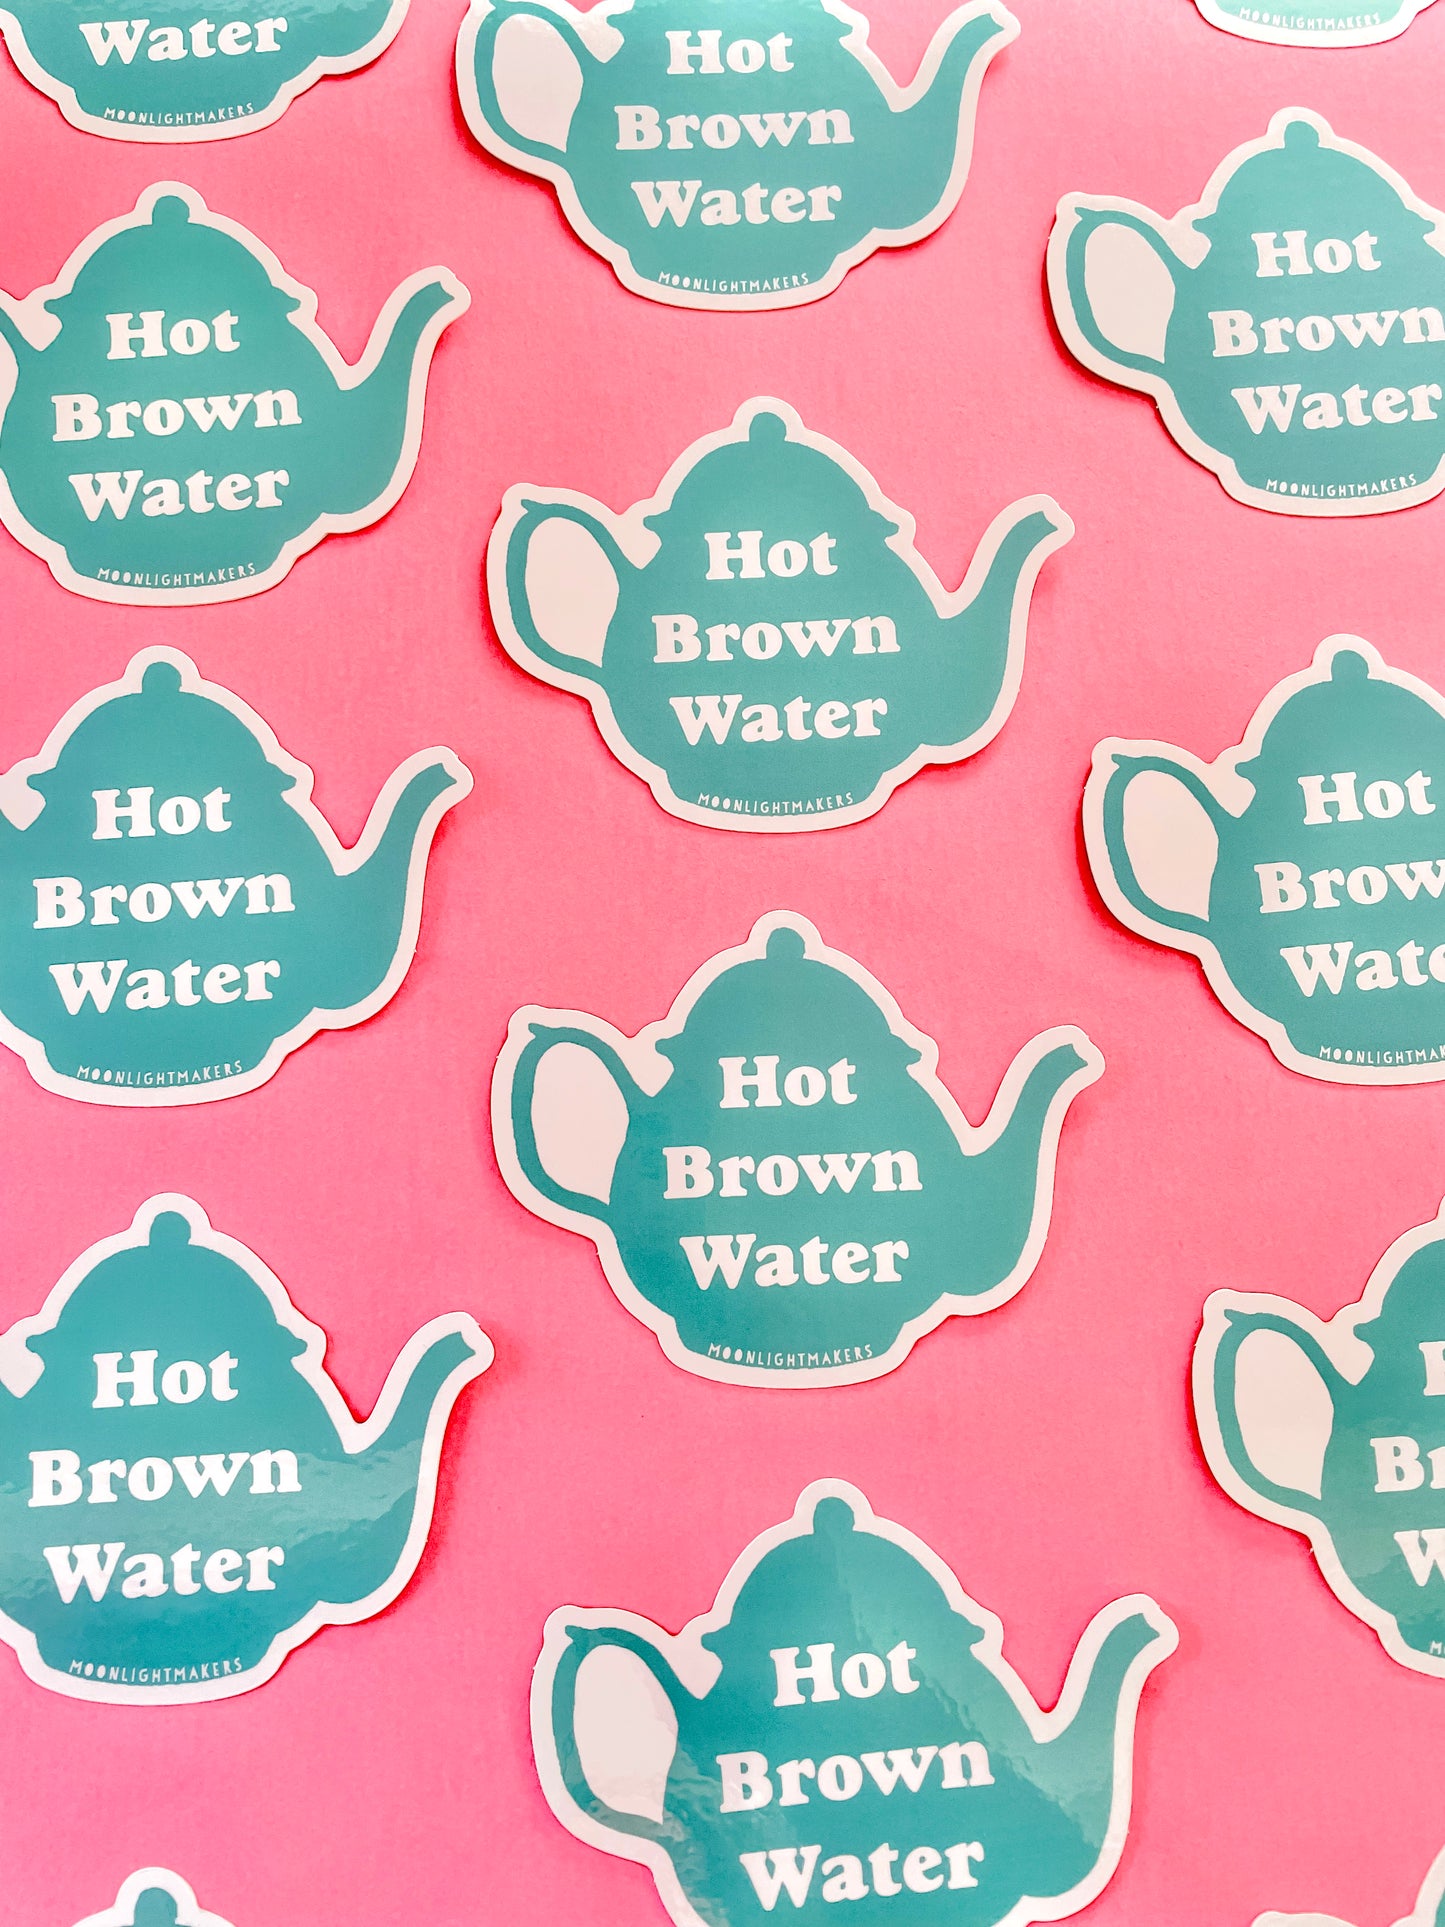 Tea Is Just Hot Brown Water (Ted Lasso) - Die Cut Sticker - MoonlightMakers